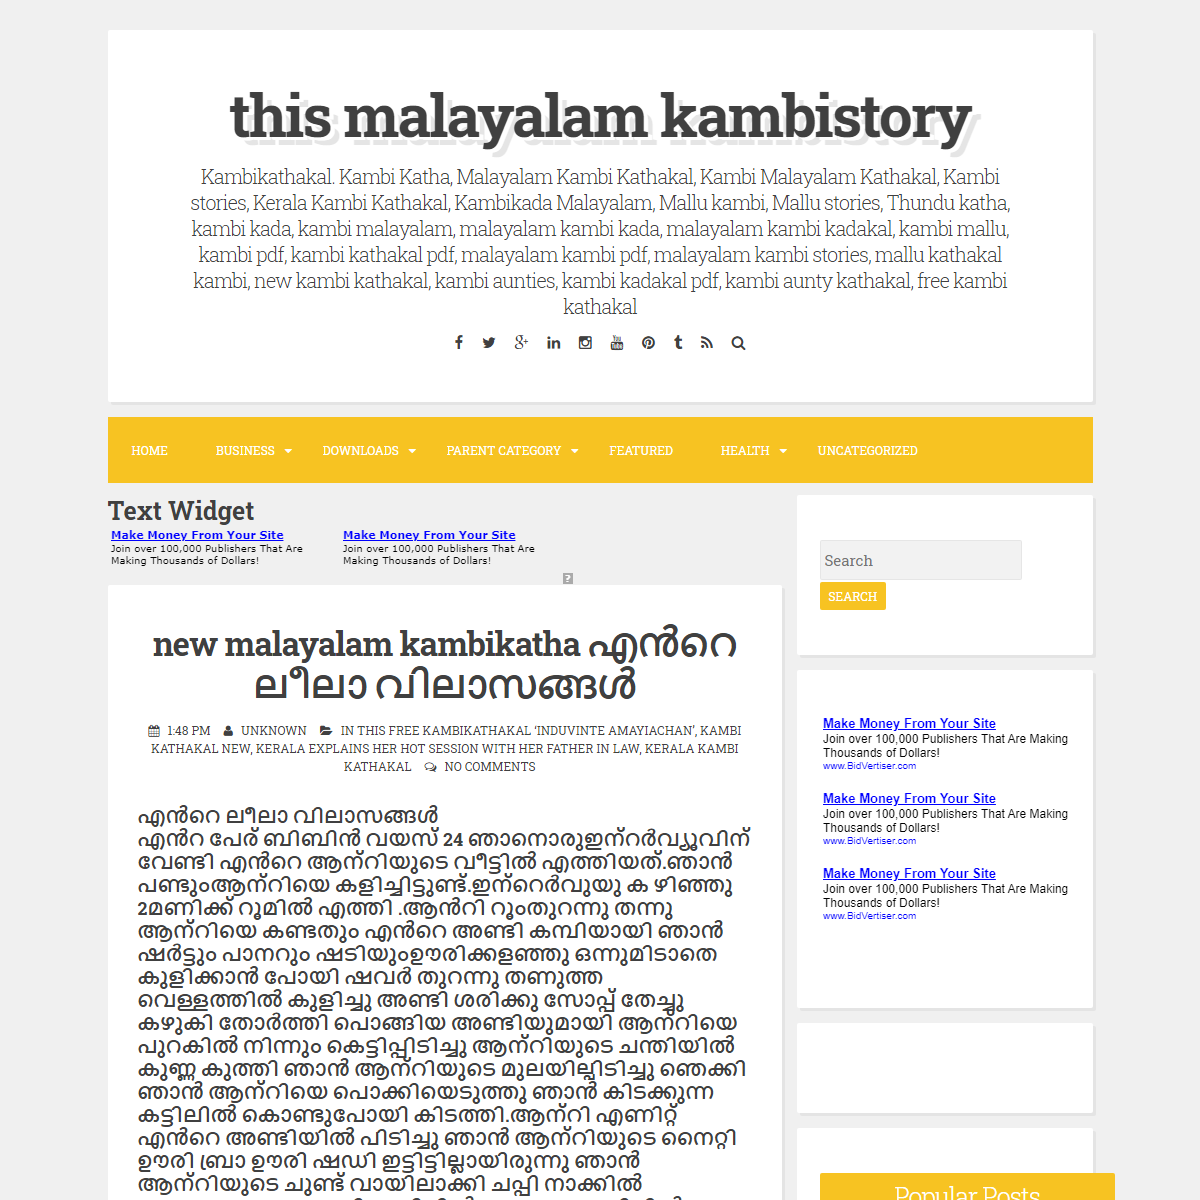 A complete backup of https://kamakathakal-kambi.blogspot.com/2015/10/new-malayalam-kambikatha.html